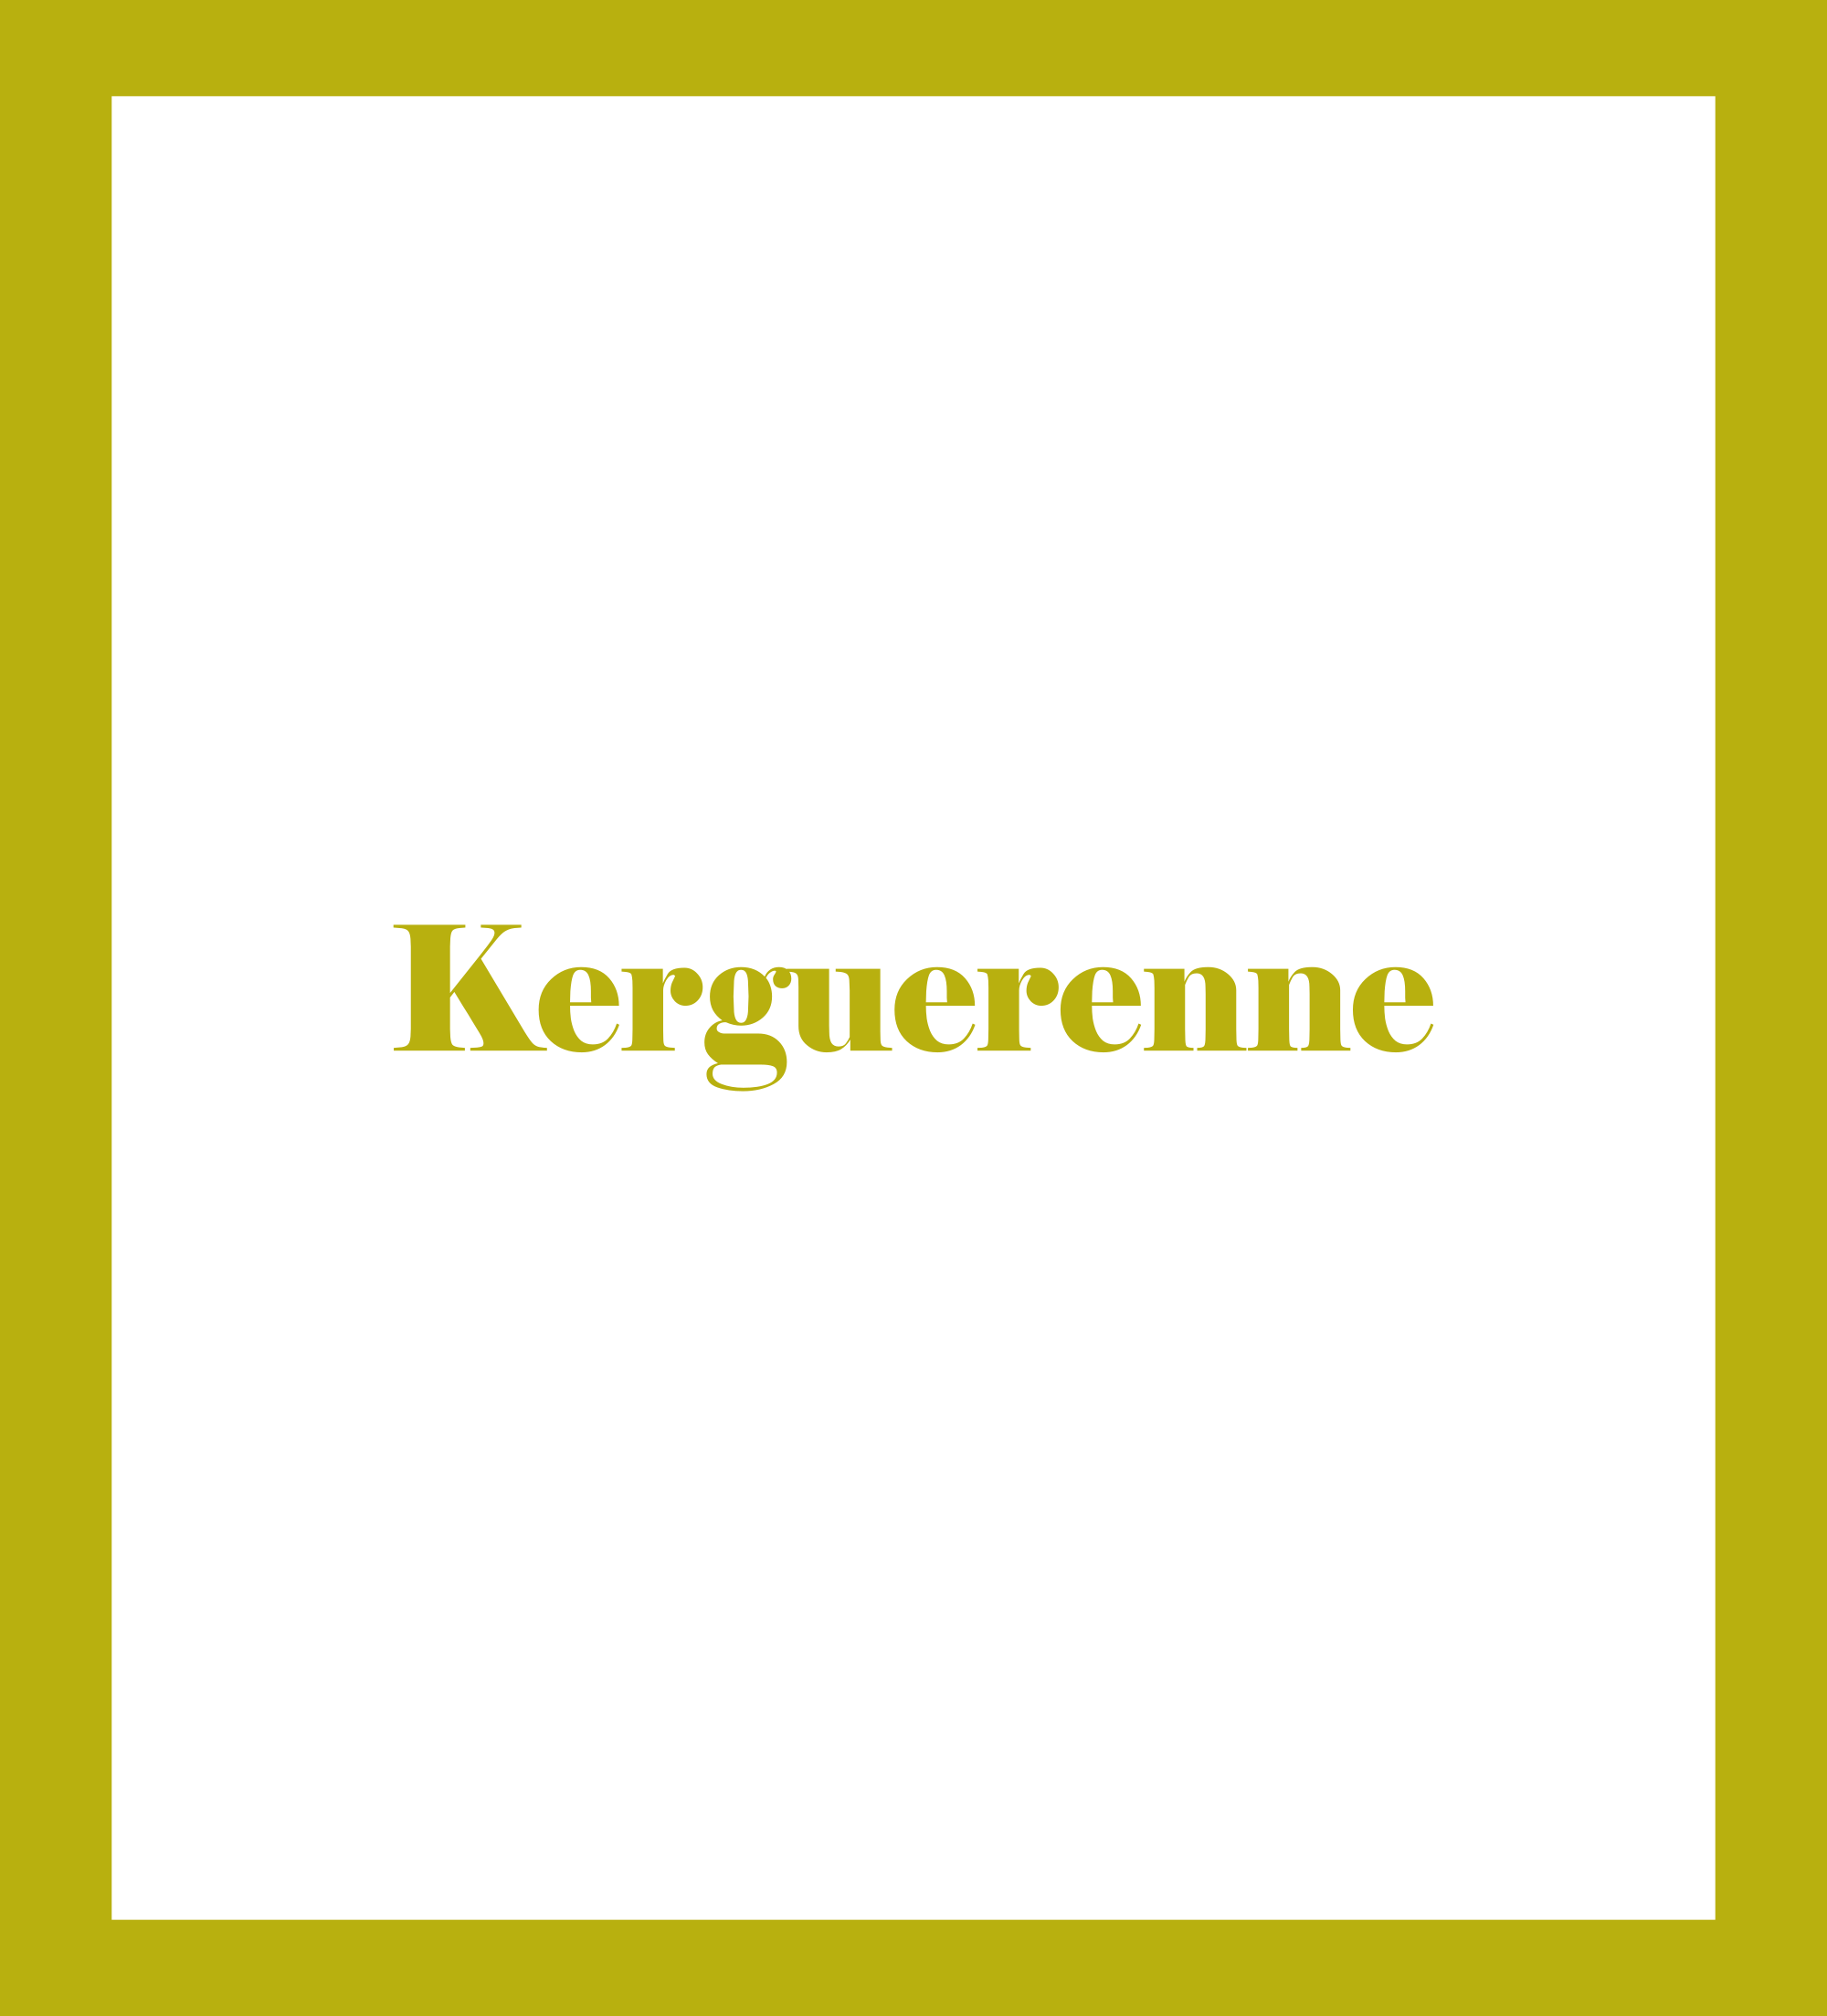 Kerguerenne